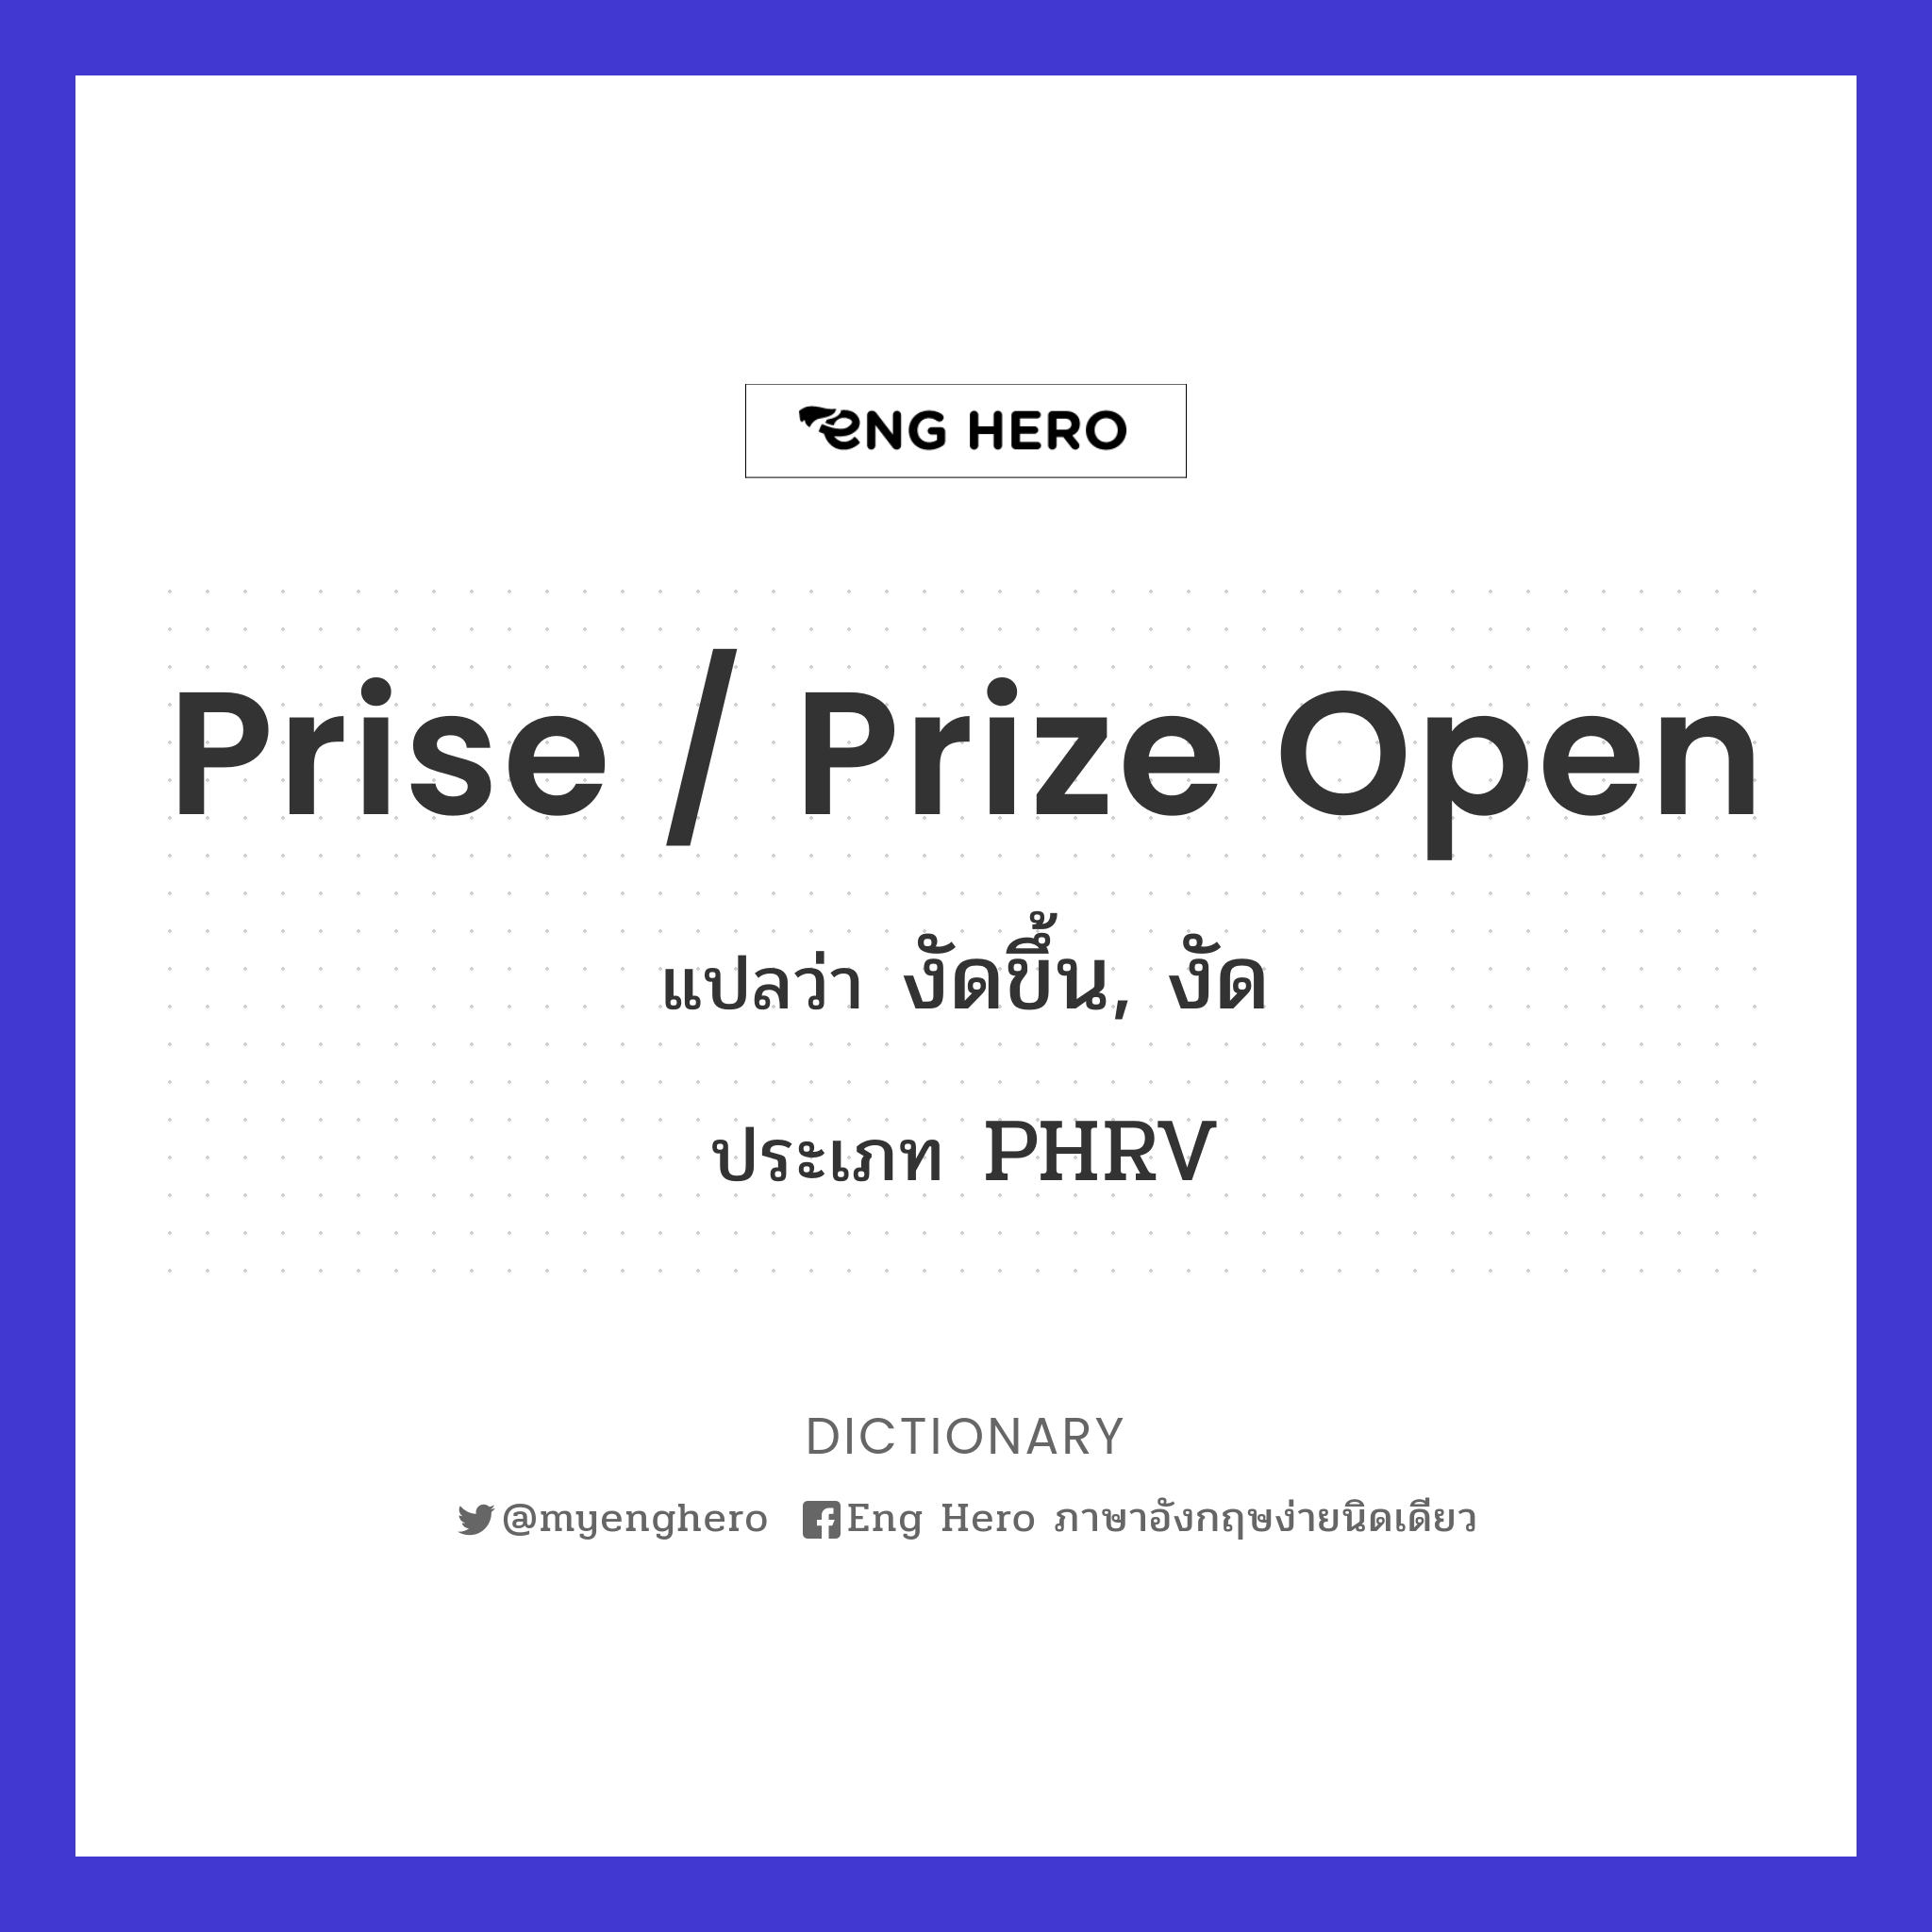 prise / prize open